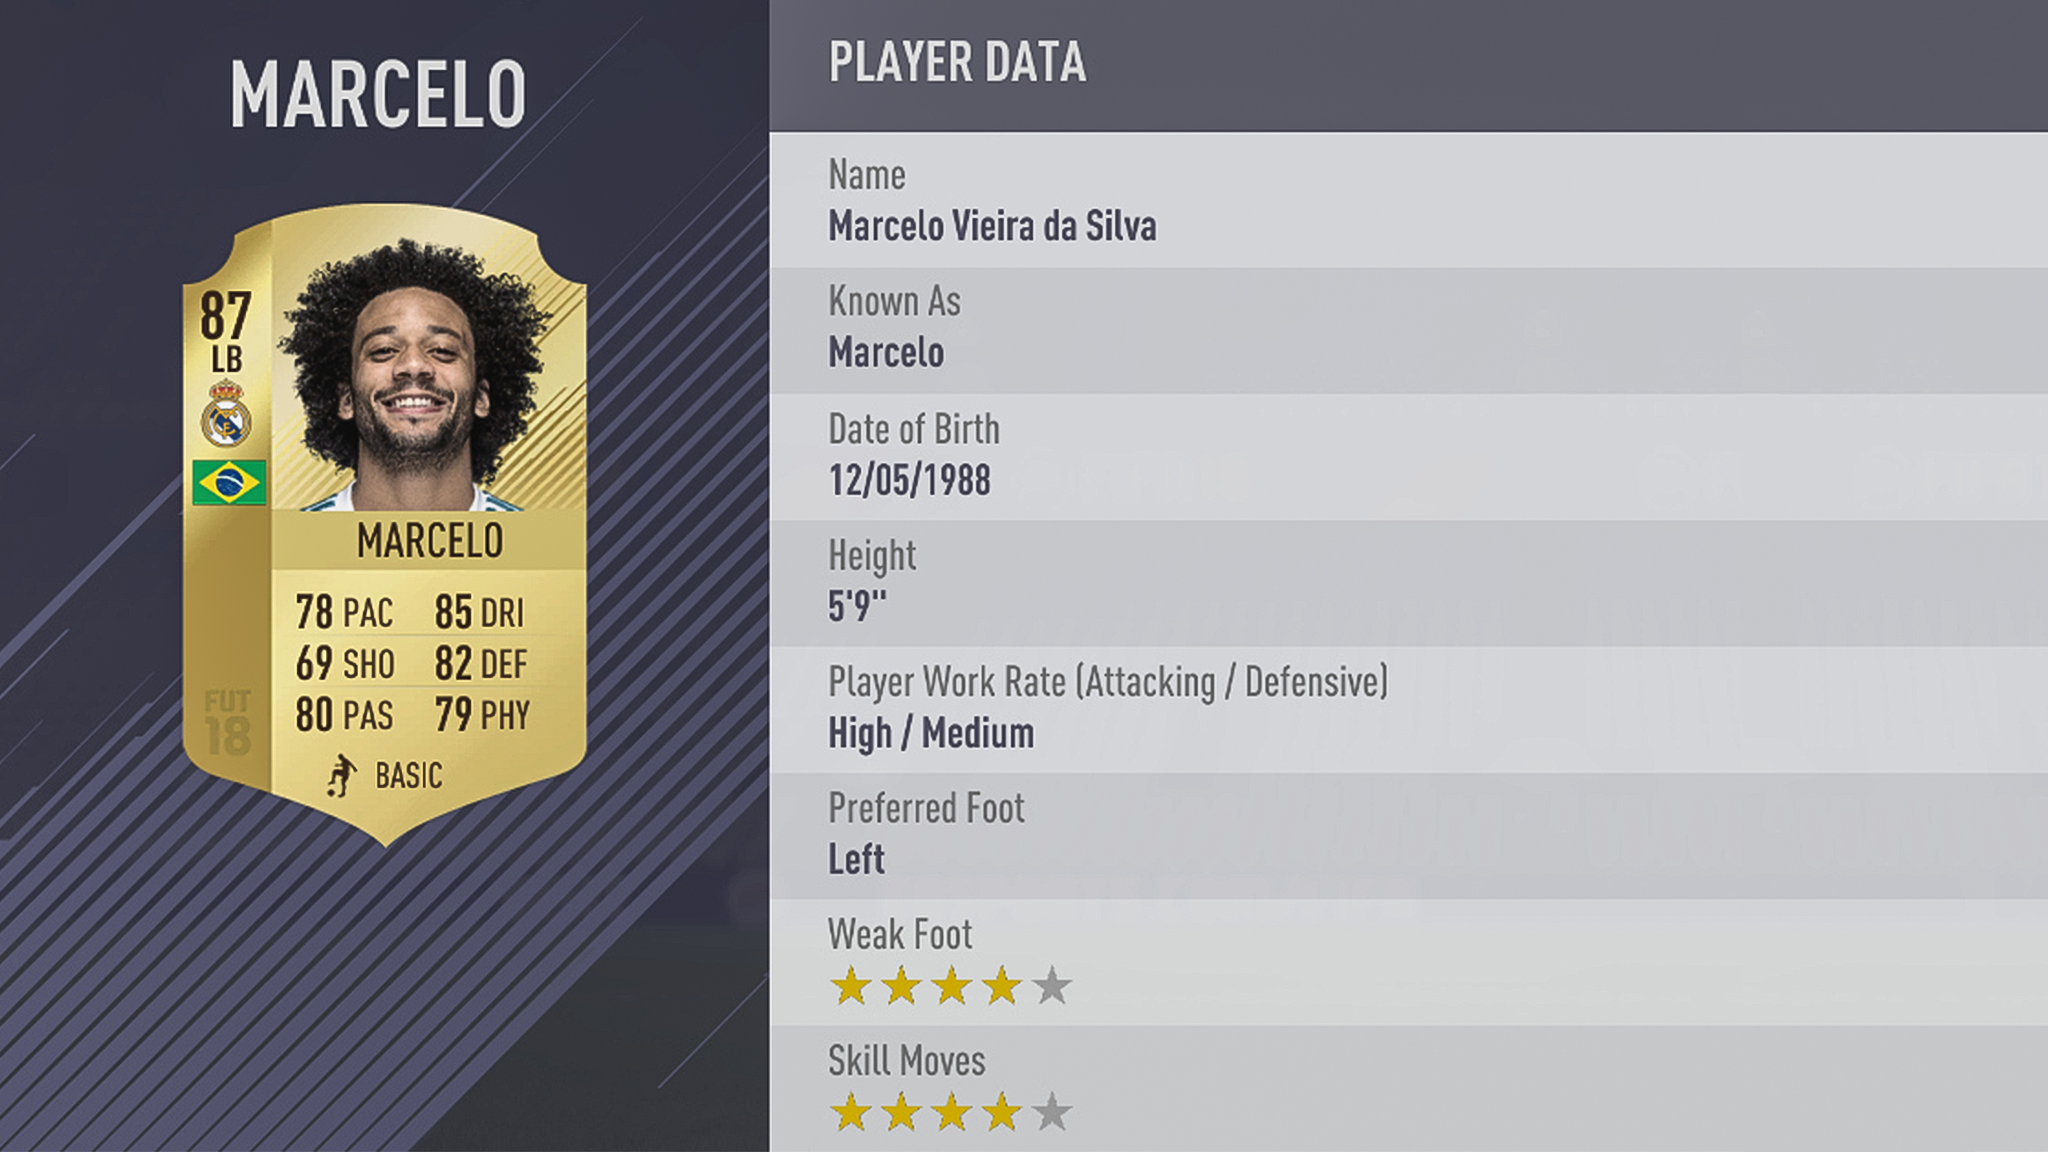 38. Marcelo